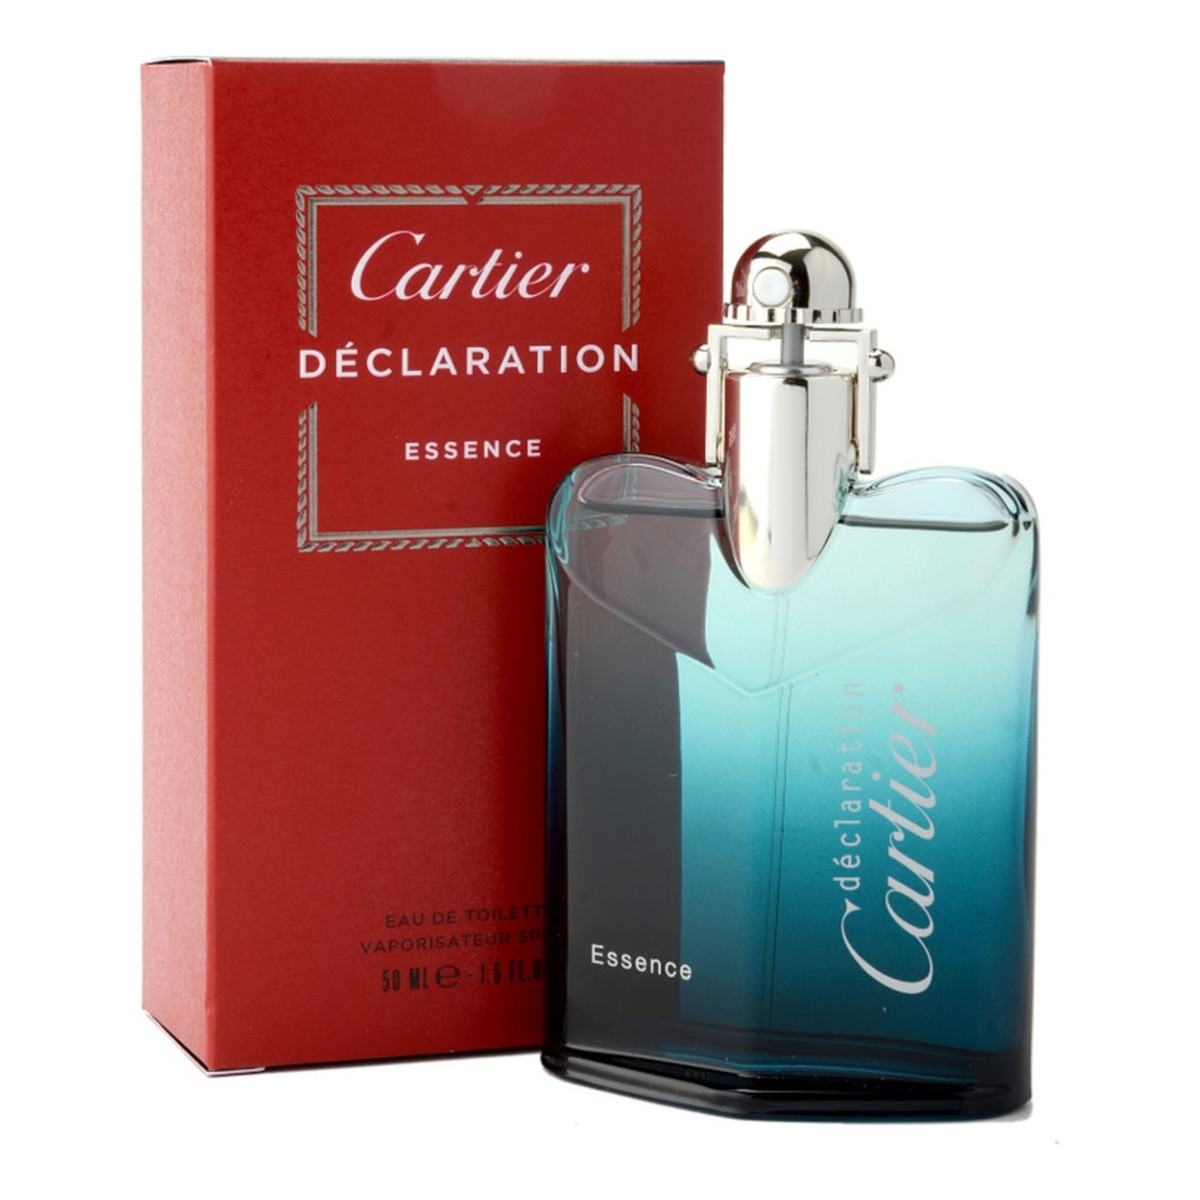 Cartier Declaration Essence woda toaletowa 50ml